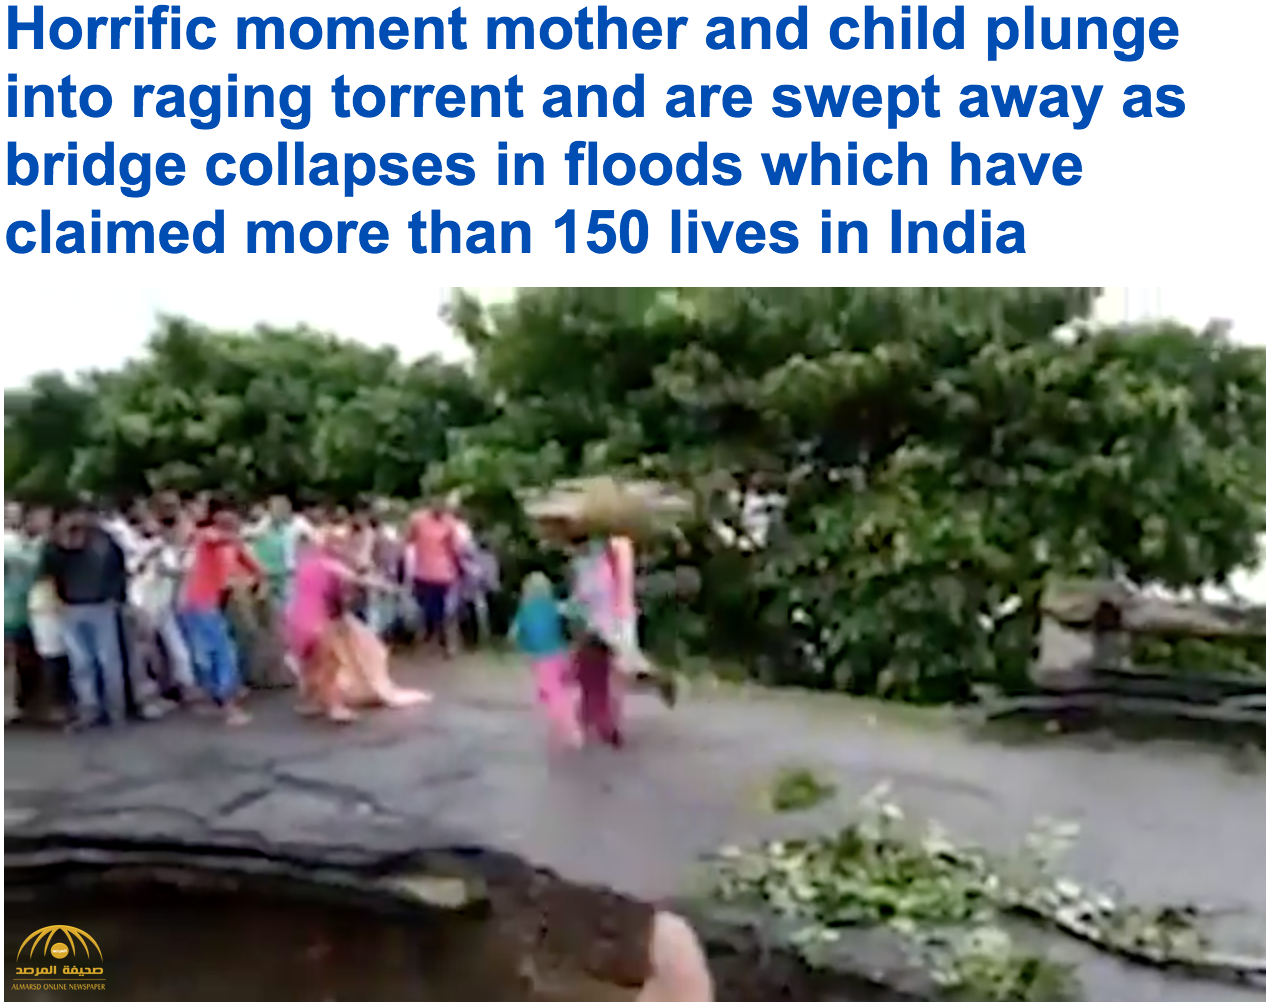 فيديو مروع: موت أم وطفلتها أثناء انهيار جسر في فيضان بالهند.. شاهد: ما حدث للأب؟